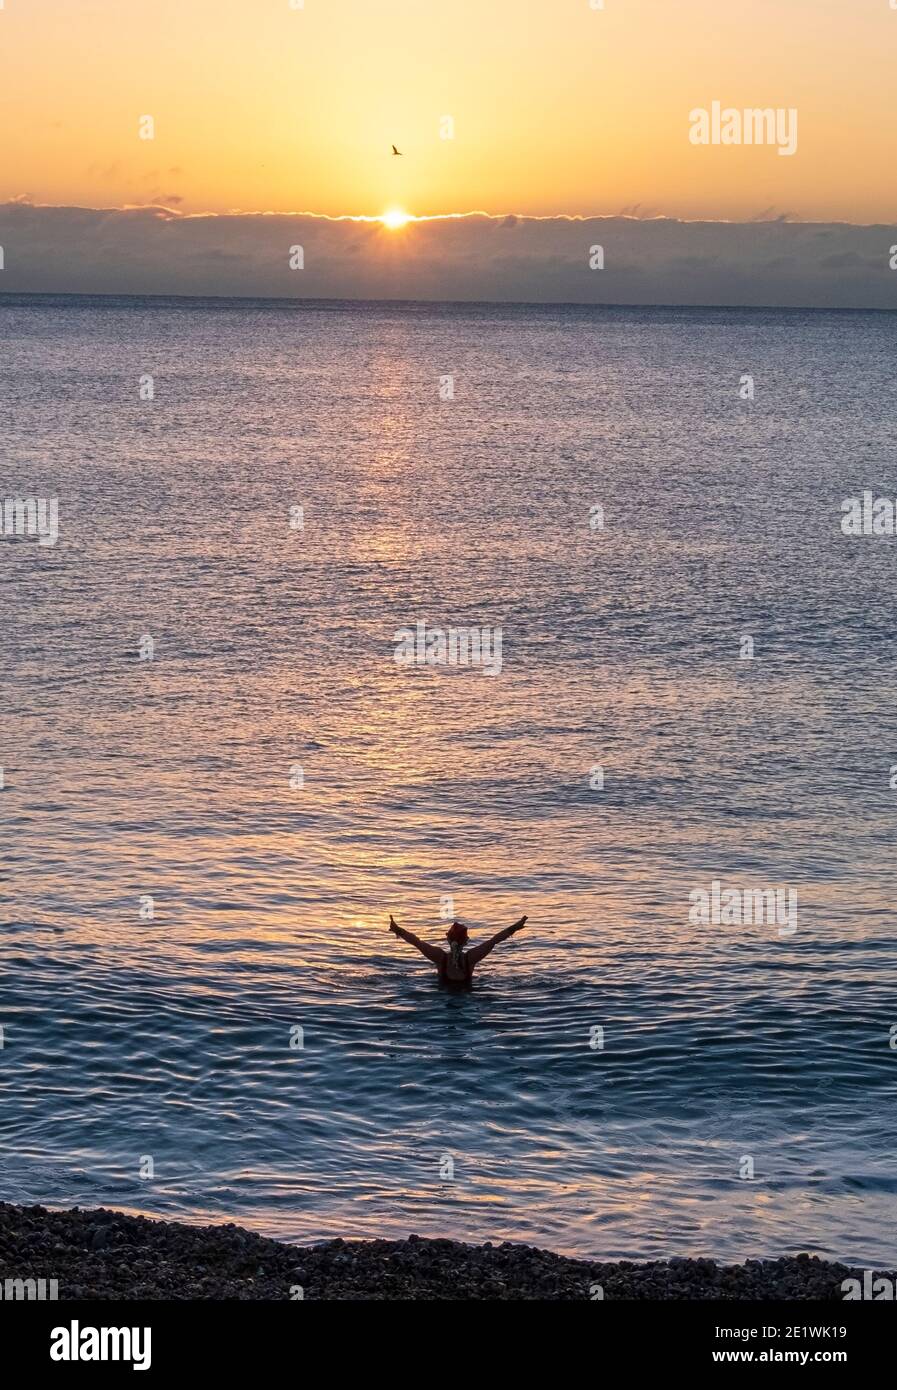 Schwimmer im Meer begrüßen den Sonnenaufgang, an einem kalten Dezember im Winter, in Hastings, am Xmas Day, East Sussex, Großbritannien Stockfoto